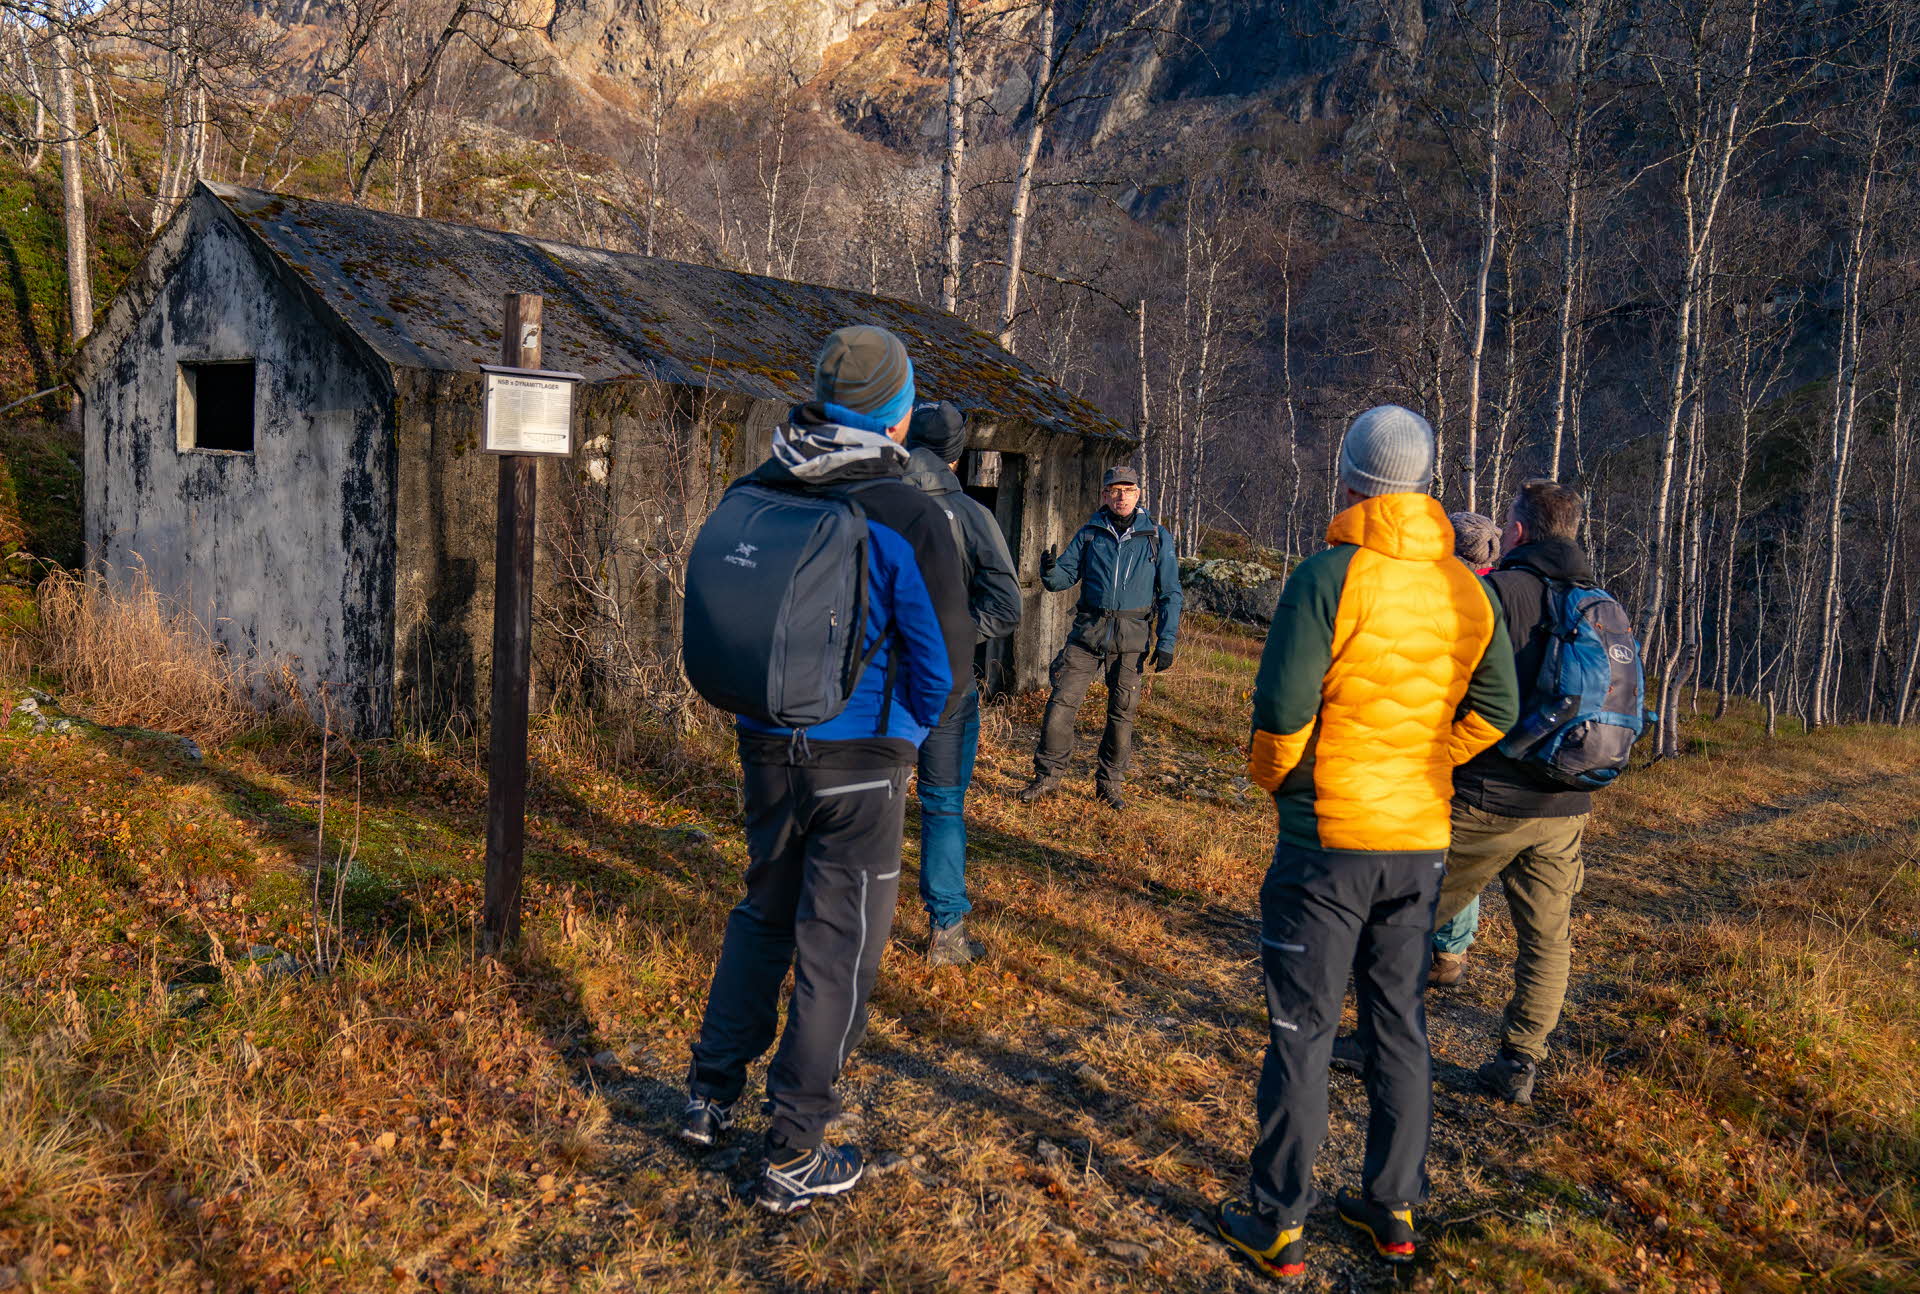 道の脇の古い小屋のそばで、ガイドの男性の言葉に聴き入る参加者たち。 